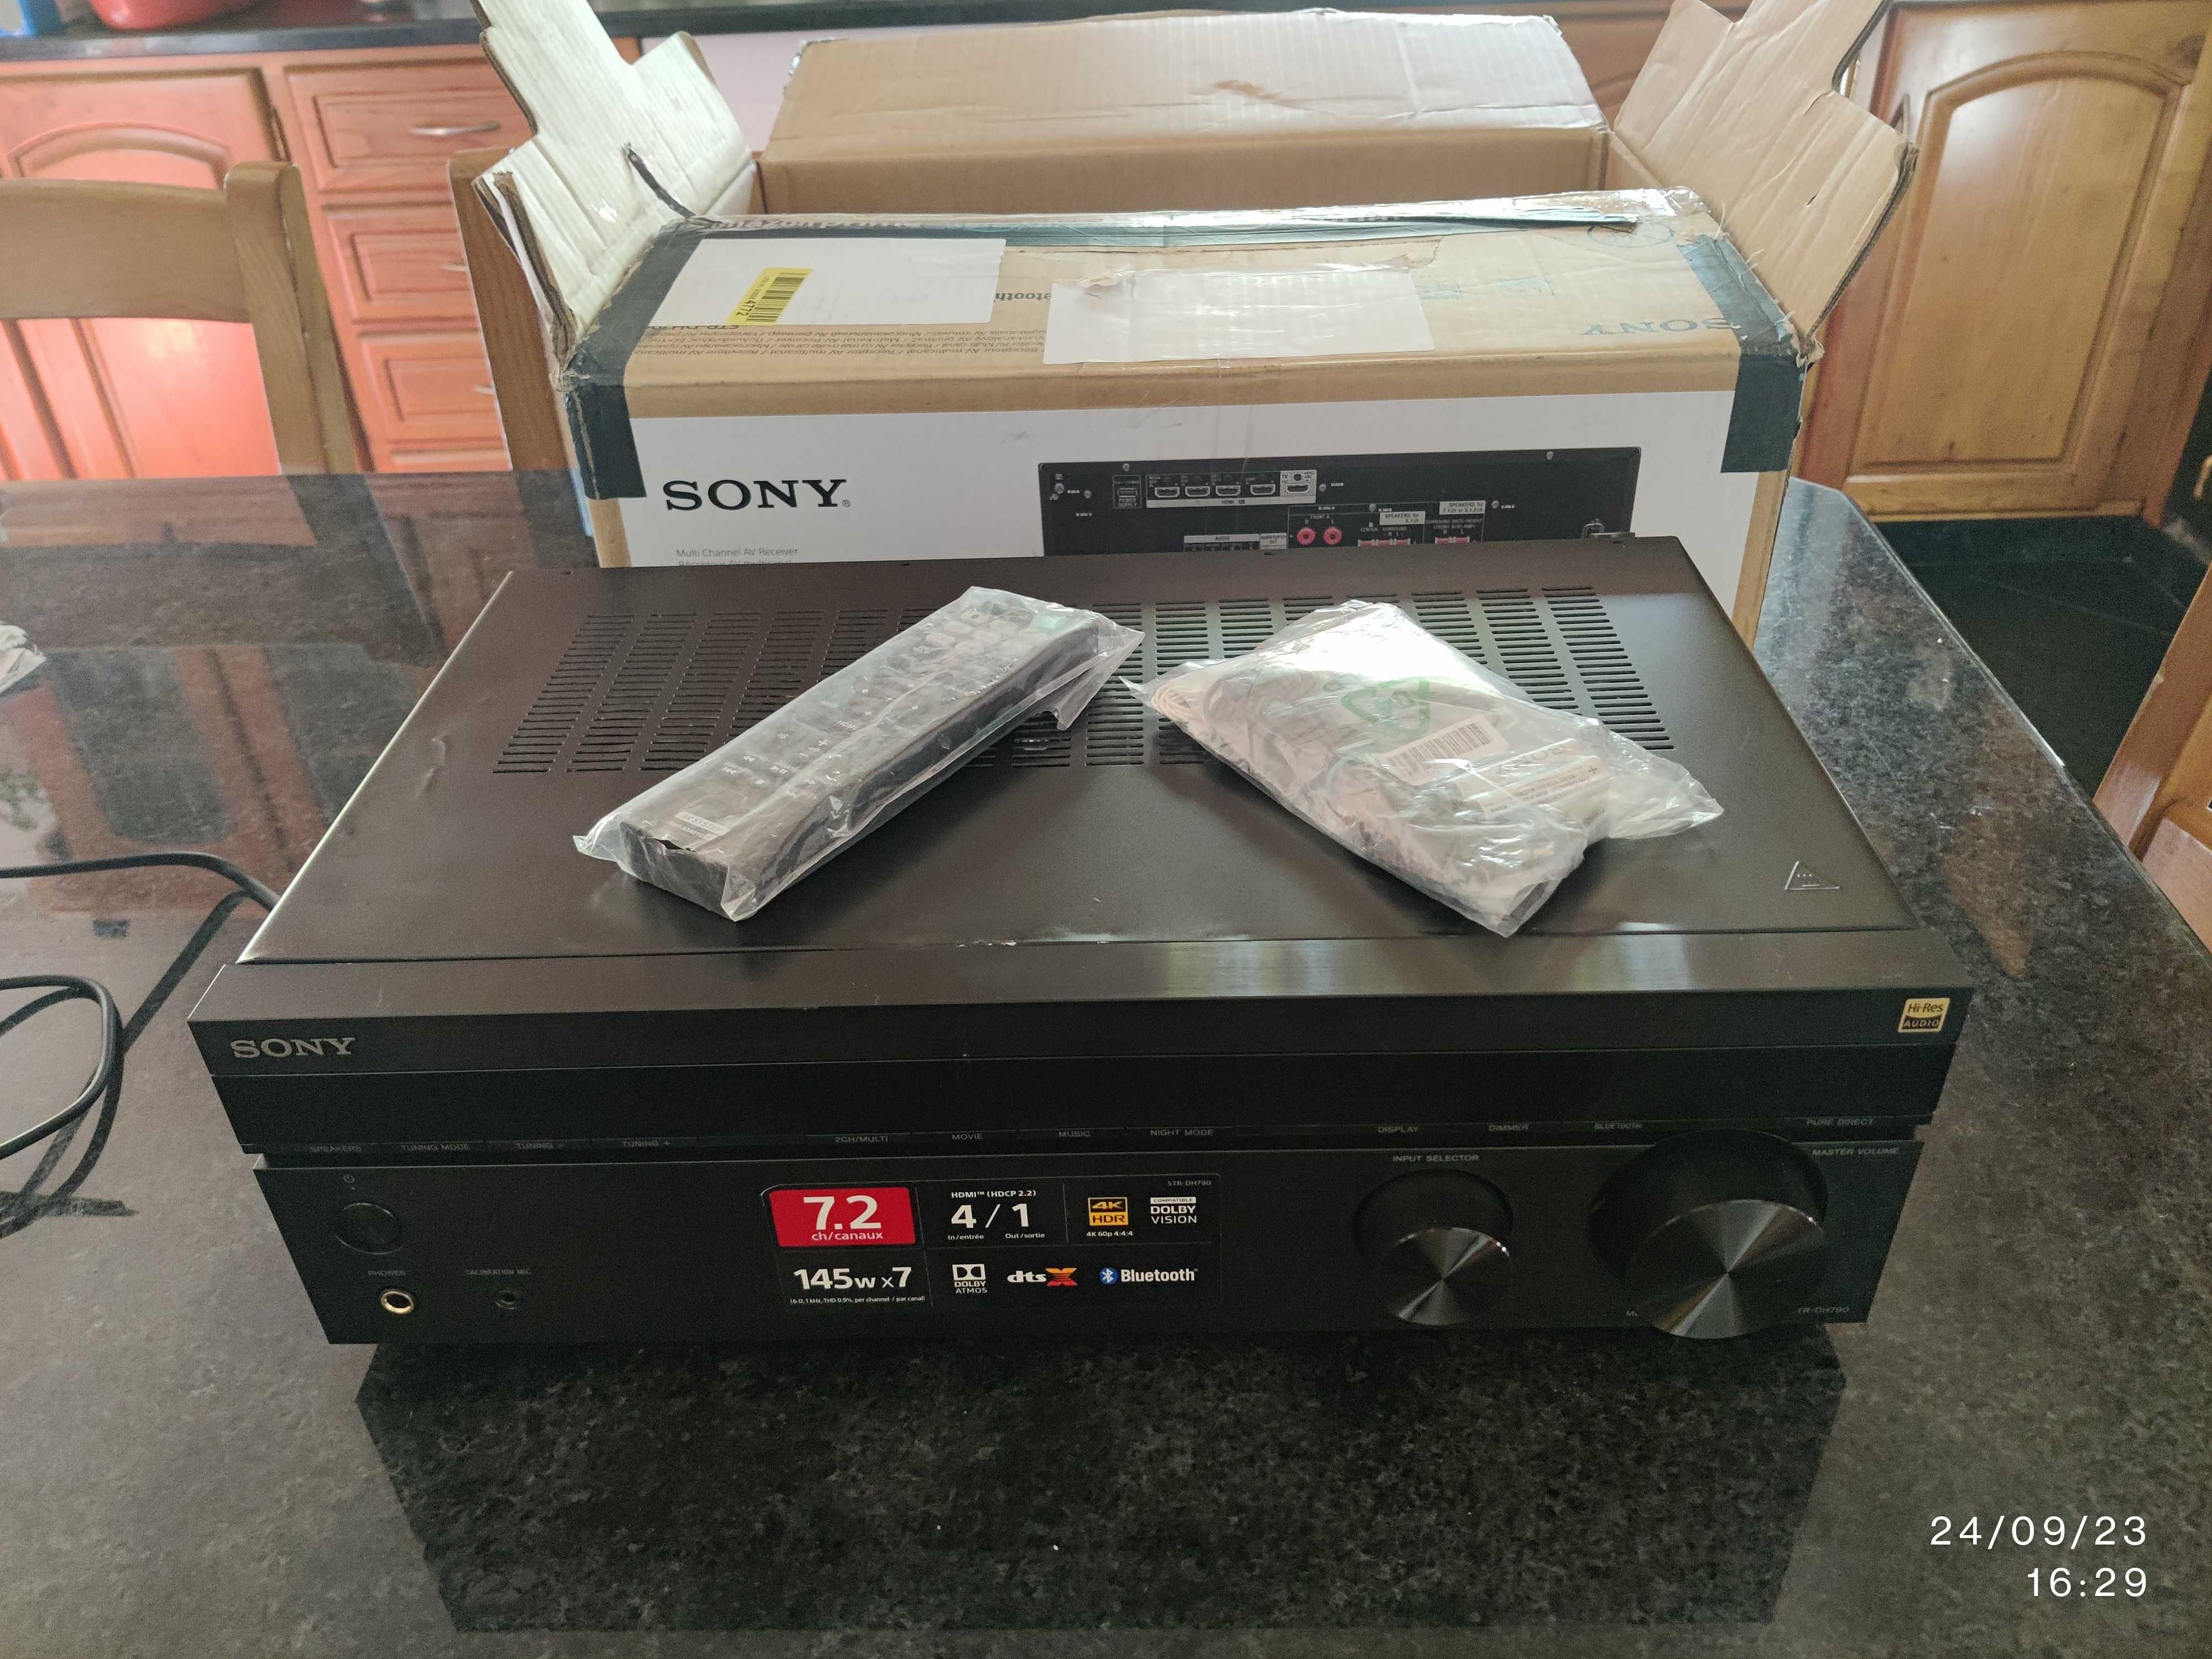 Sony STR DH-790 Recetor AV  7.2 canais Som Dolby Atmos® e DTS:X™